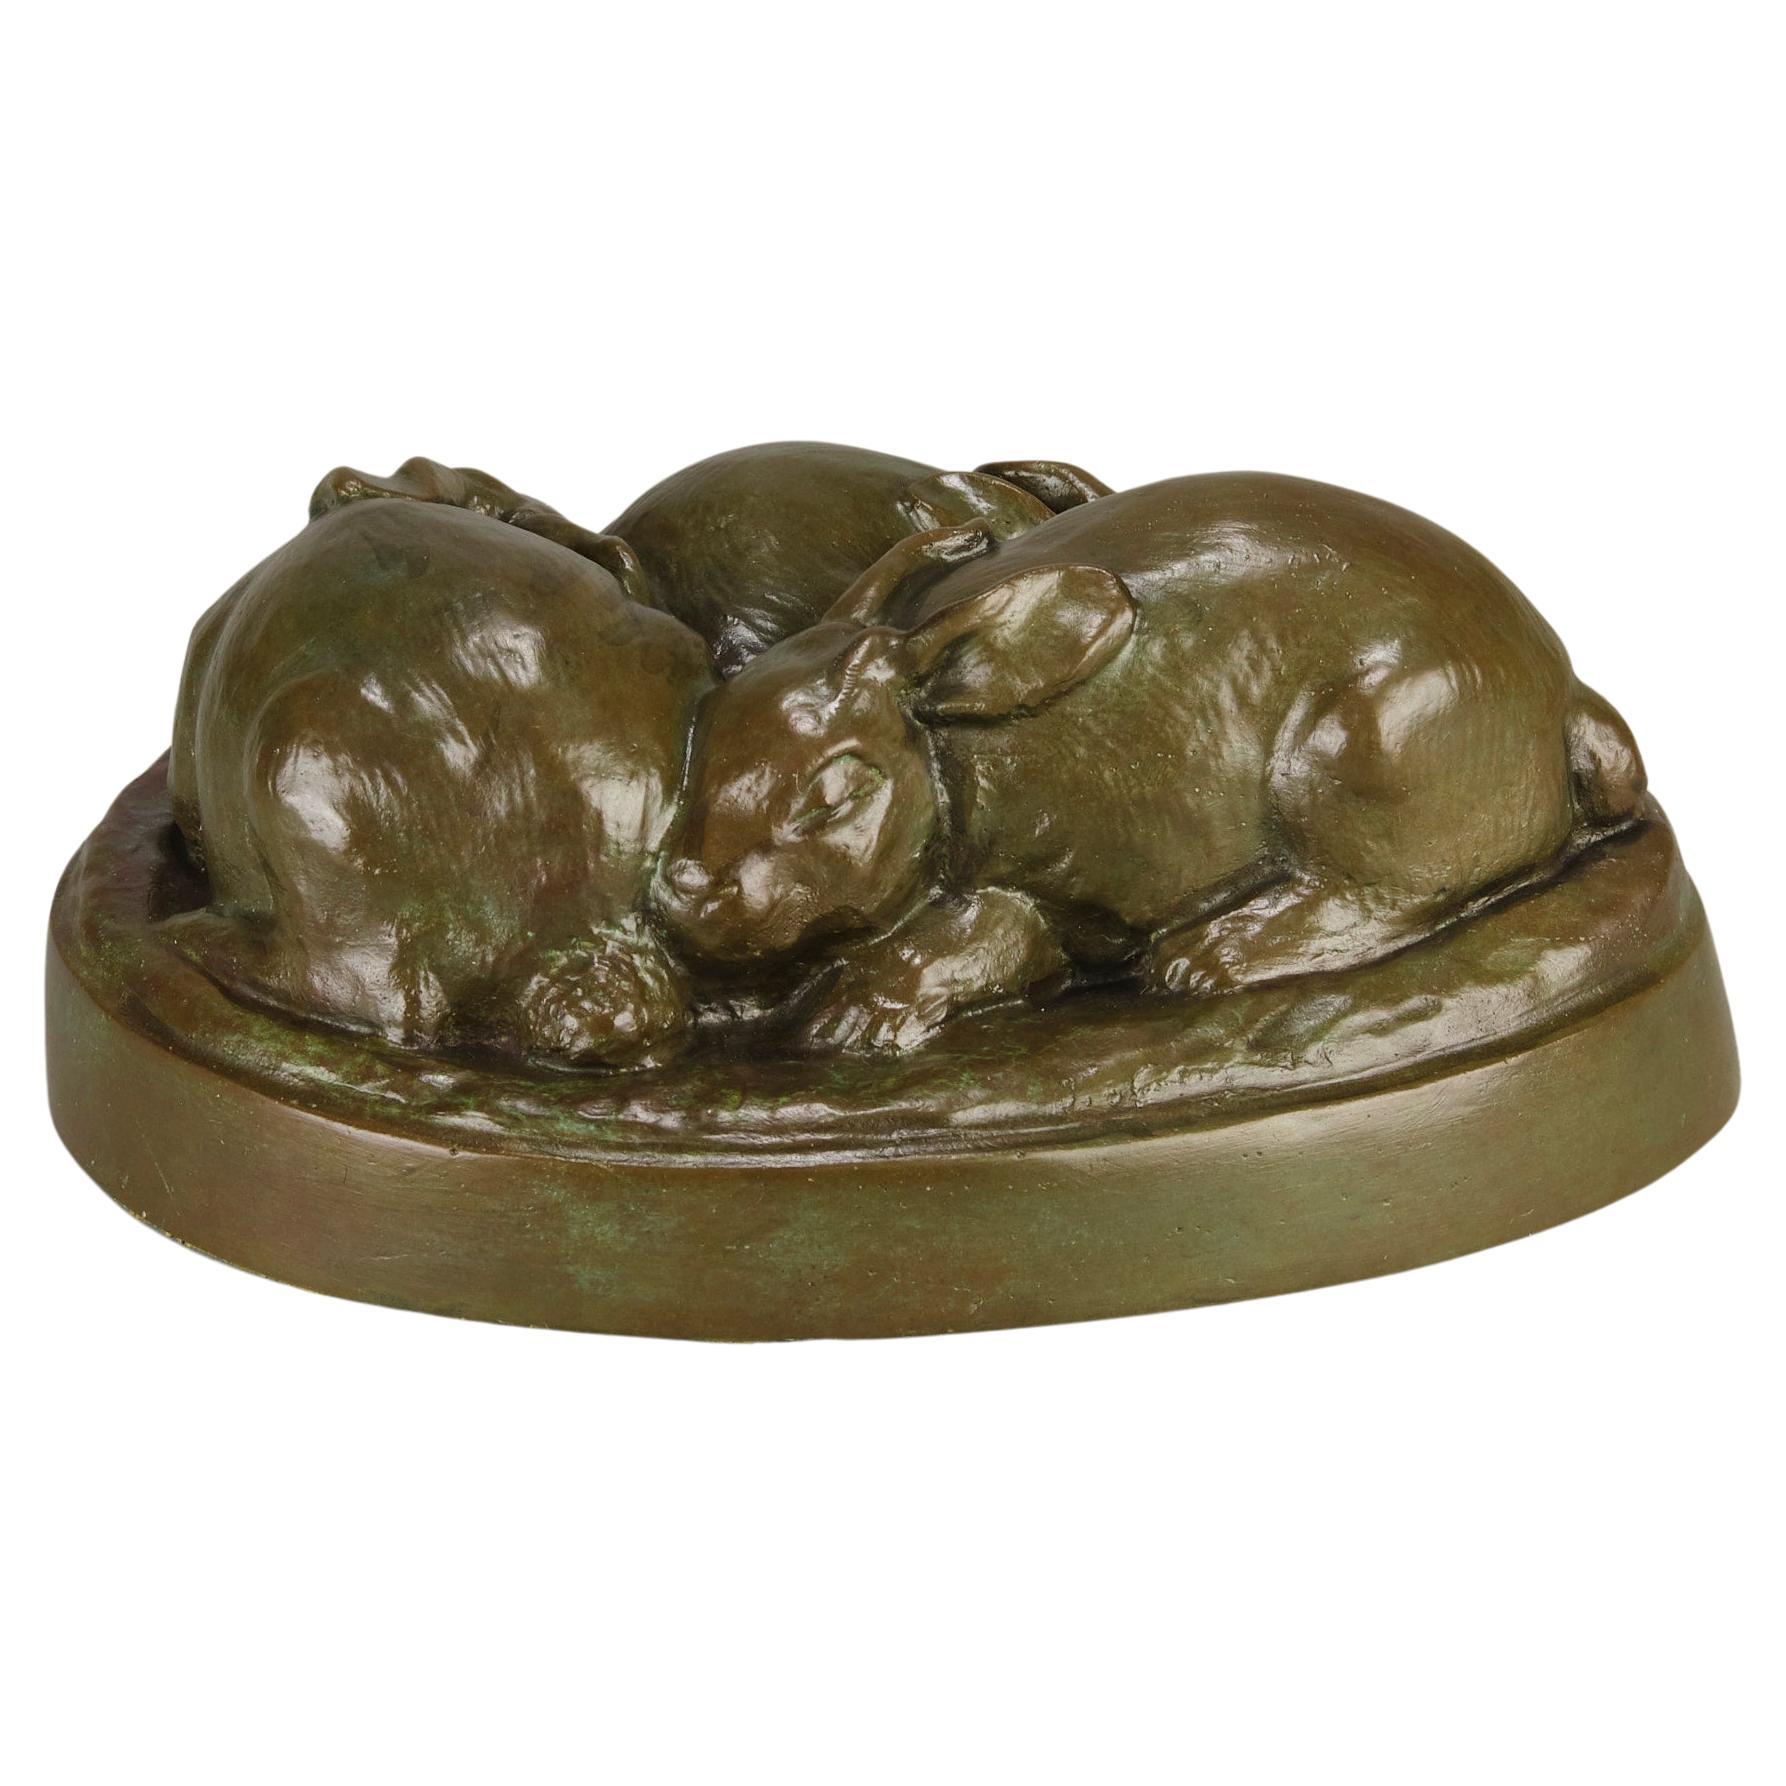 Bronze américain du début du 20e siècle intitulé "Three Sleeping Bunnies" (Trois lapins endormis)